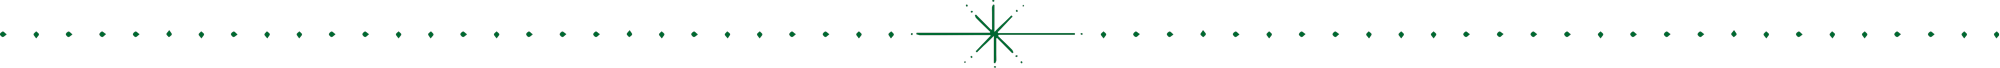 A starburst separator pattern